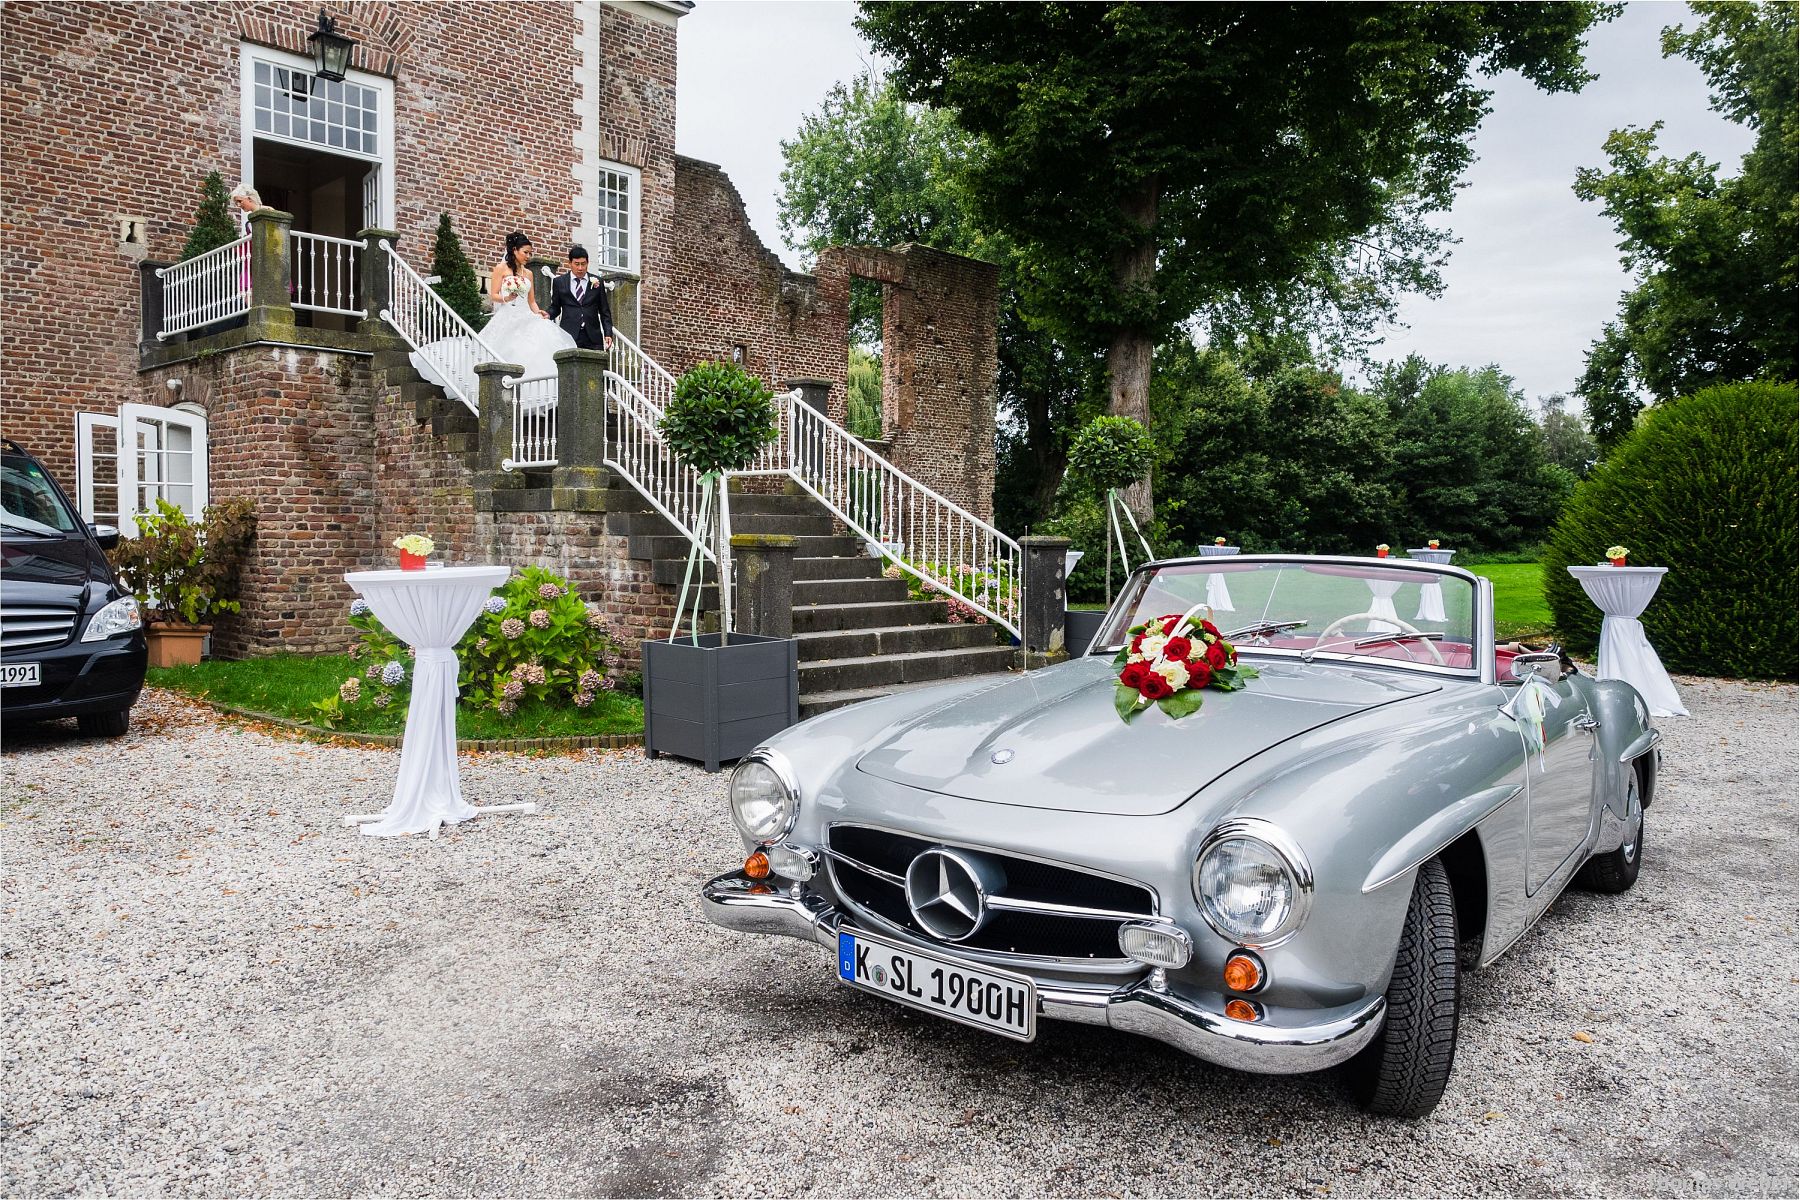 Hochzeitsfotograf Thomas Weber für eine freie Trauung und Hochzeitsfeier in der Schlossruine Hertefeld in Weeze